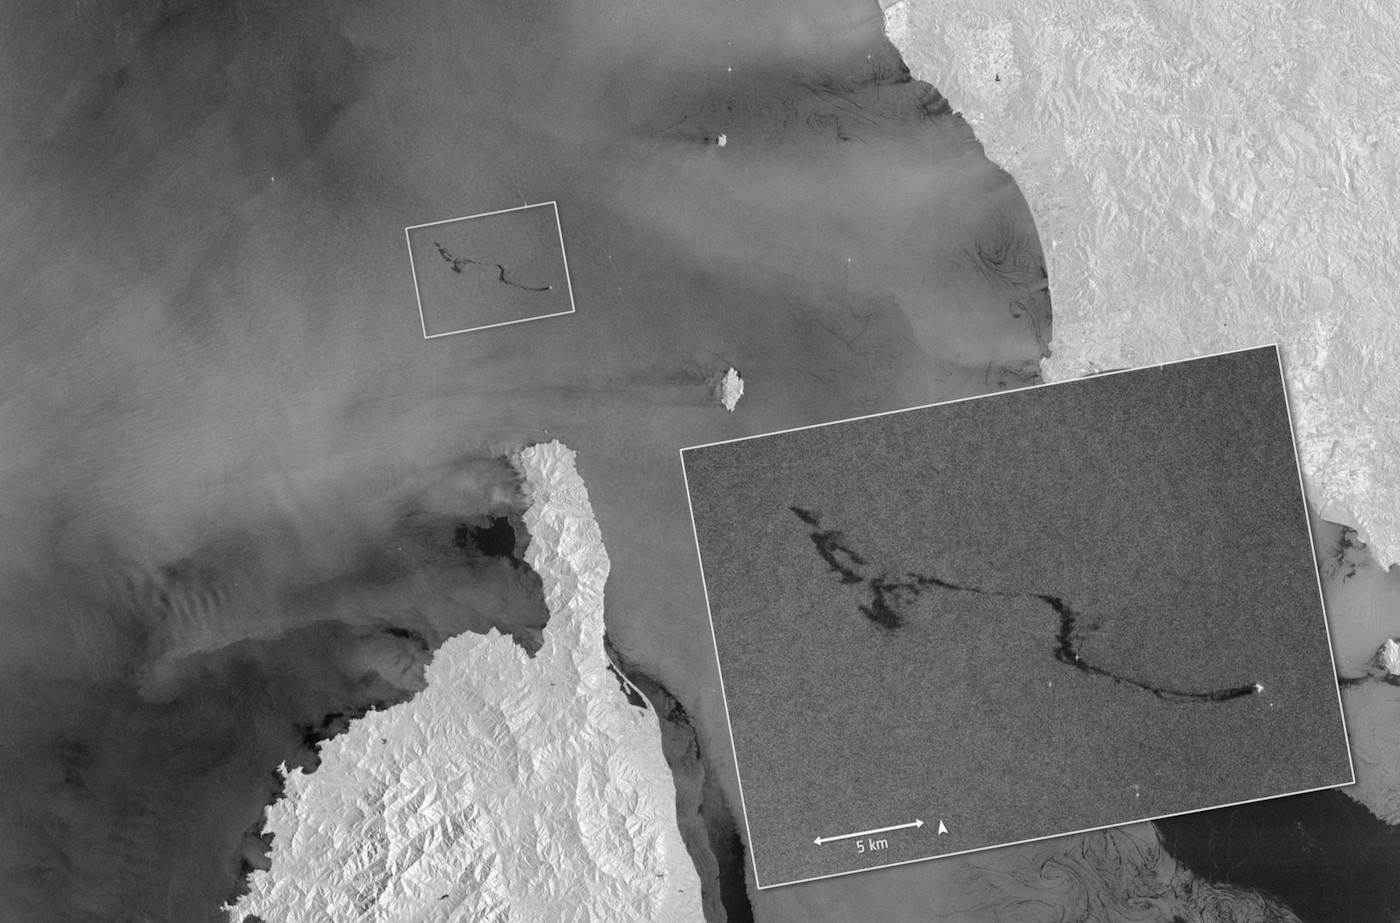 Zobrazowanie radarowe z satelity Sentinel-1 ukazujące wyciek na Morzu Śródziemnym (w październiku 2018 roku). Fot. ESA/Copernicus [esa.int]